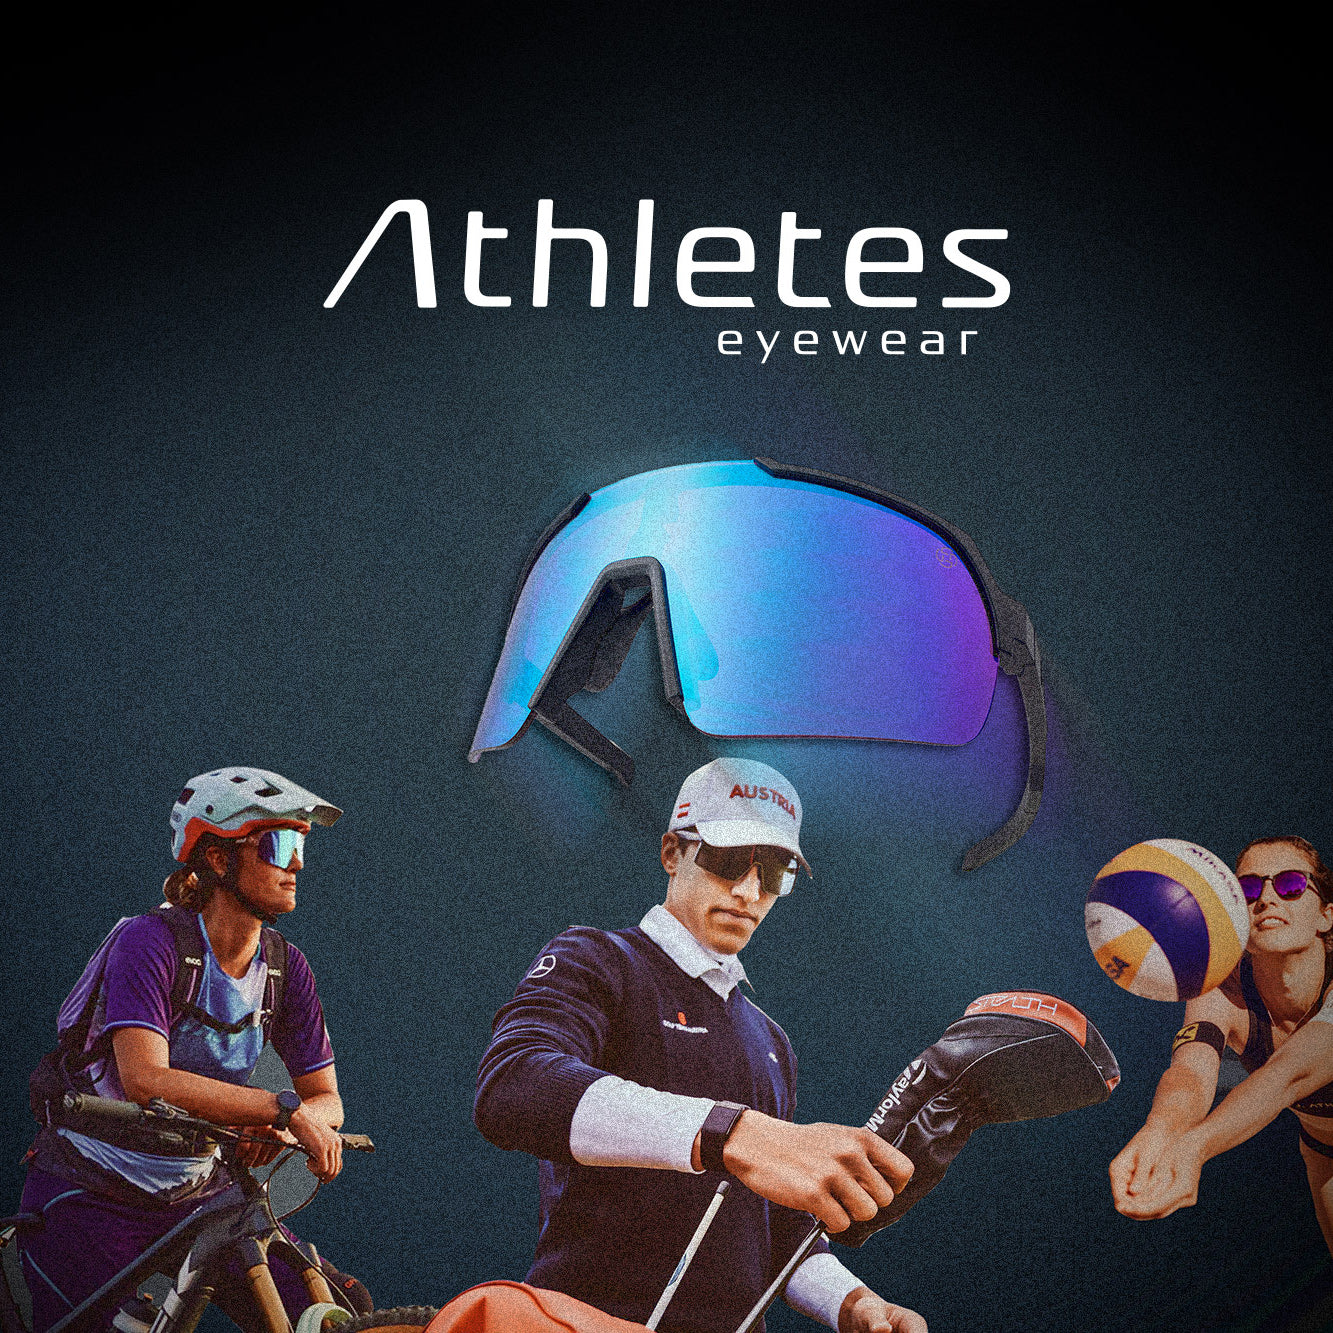 J. Athletics becomes Athletes eyewear